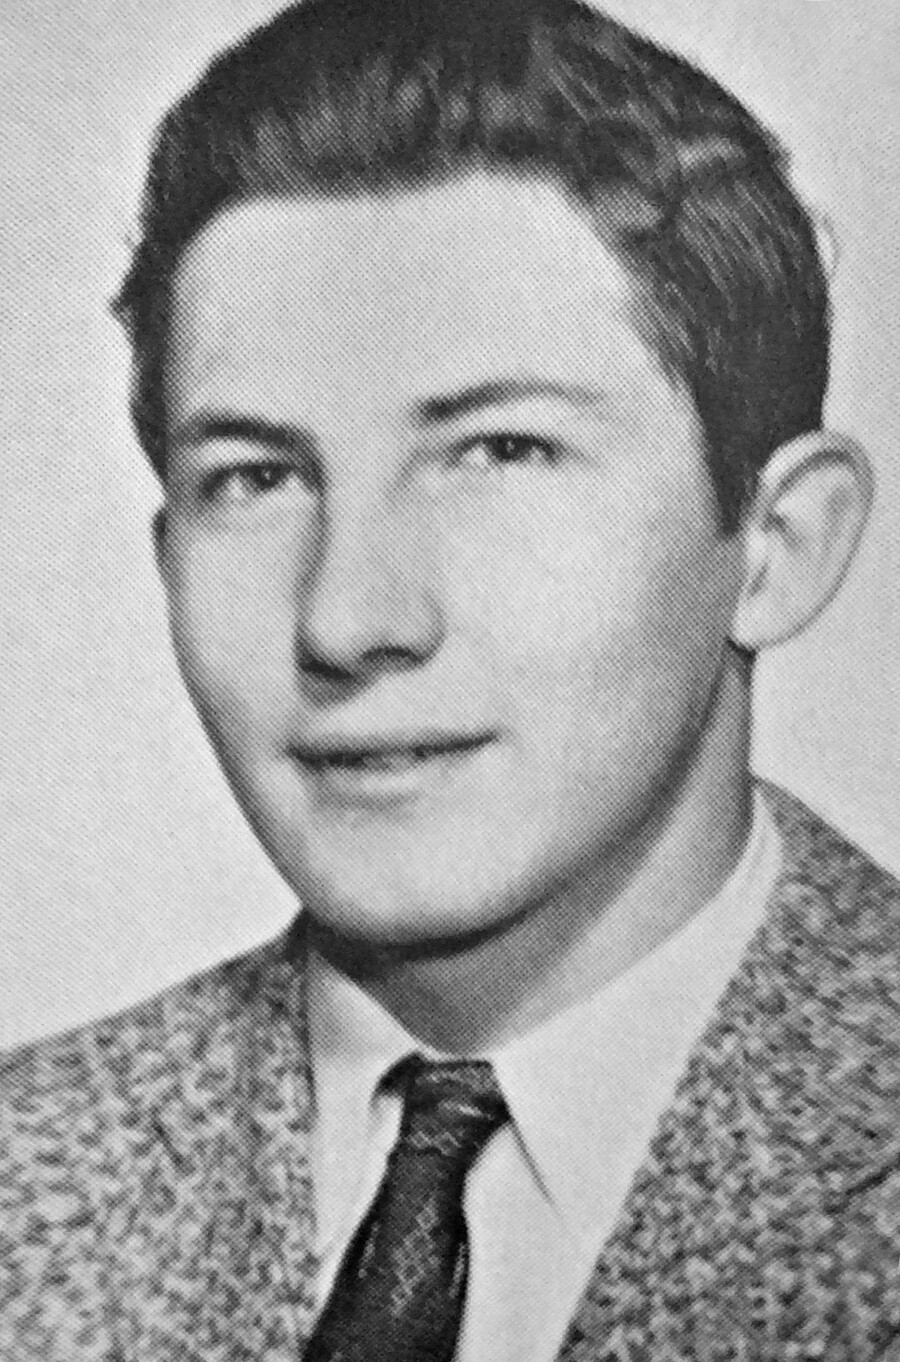 Aldrich Ames en el anuario de 1958 de McLean High School.
